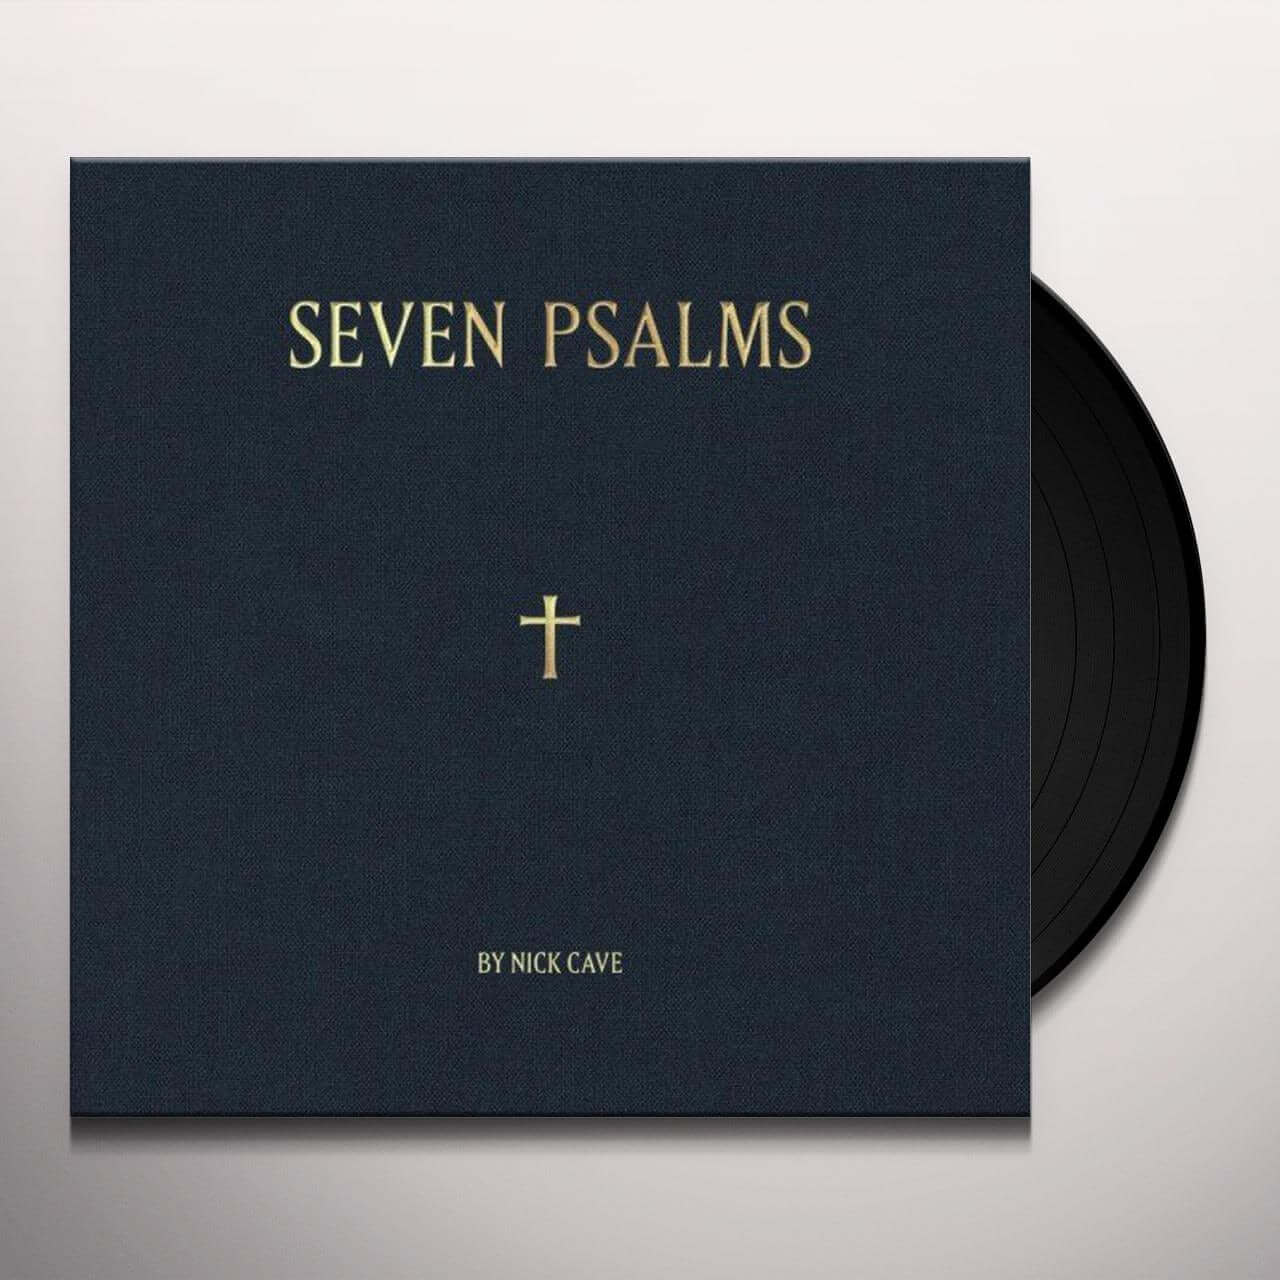 Okładka płyty winylowej artysty Nick Cave tytule SEVEN PSALMS